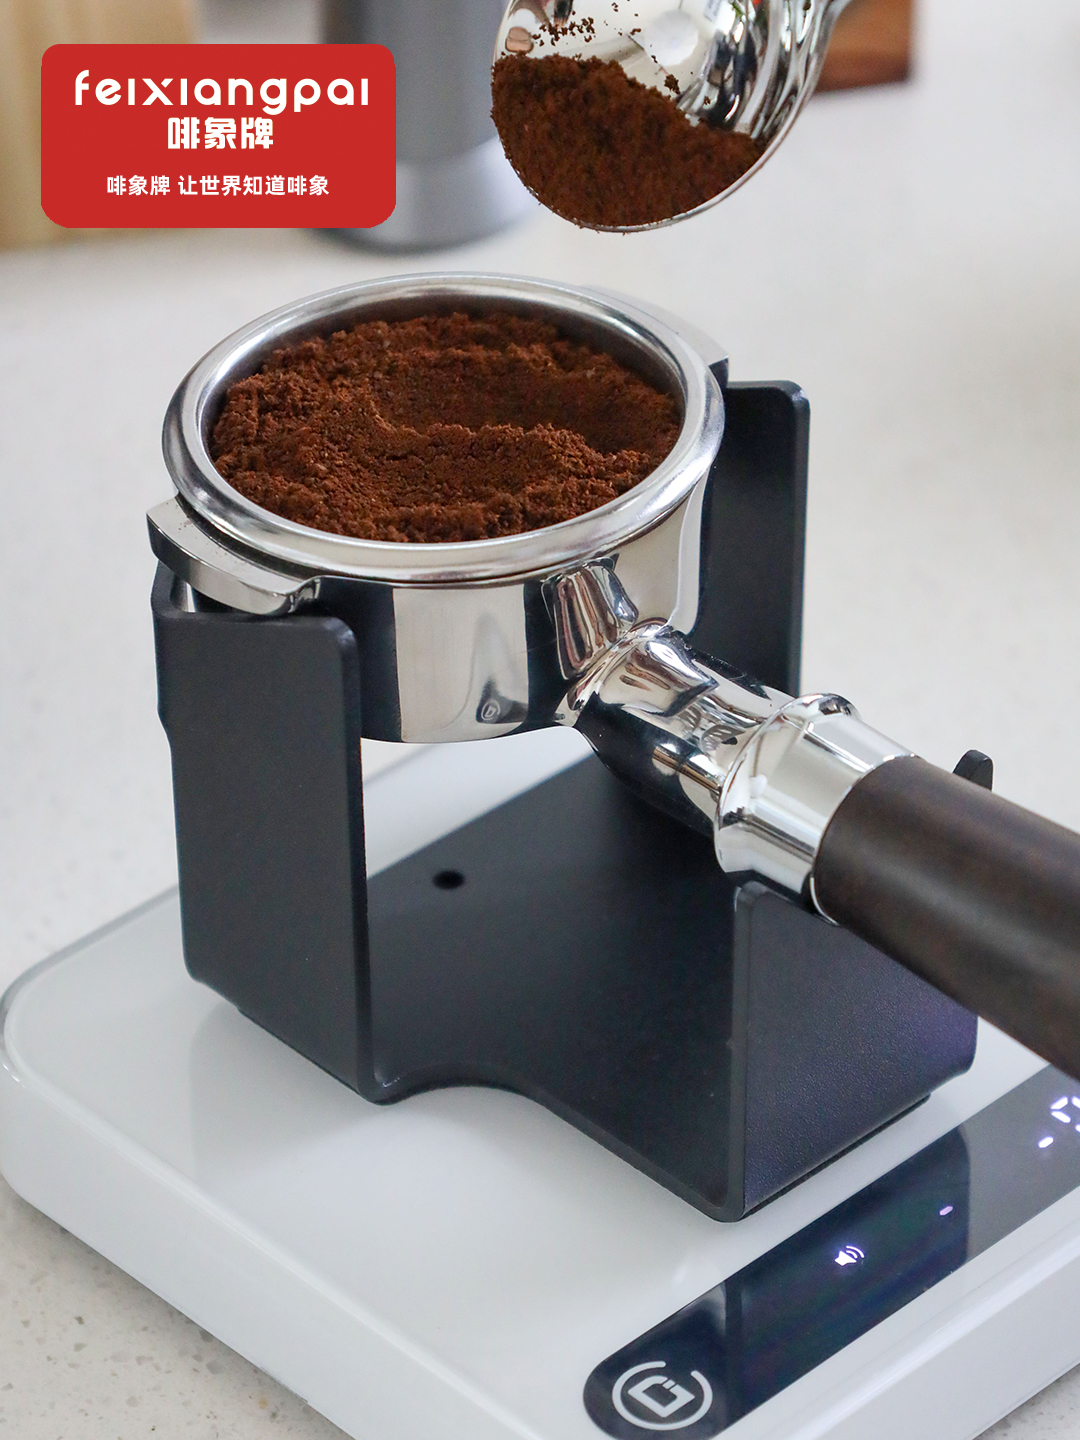 啡象咖啡機電子秤手柄架 磨豆機稱意式電子秤稱重底座掛架 (7.3折)